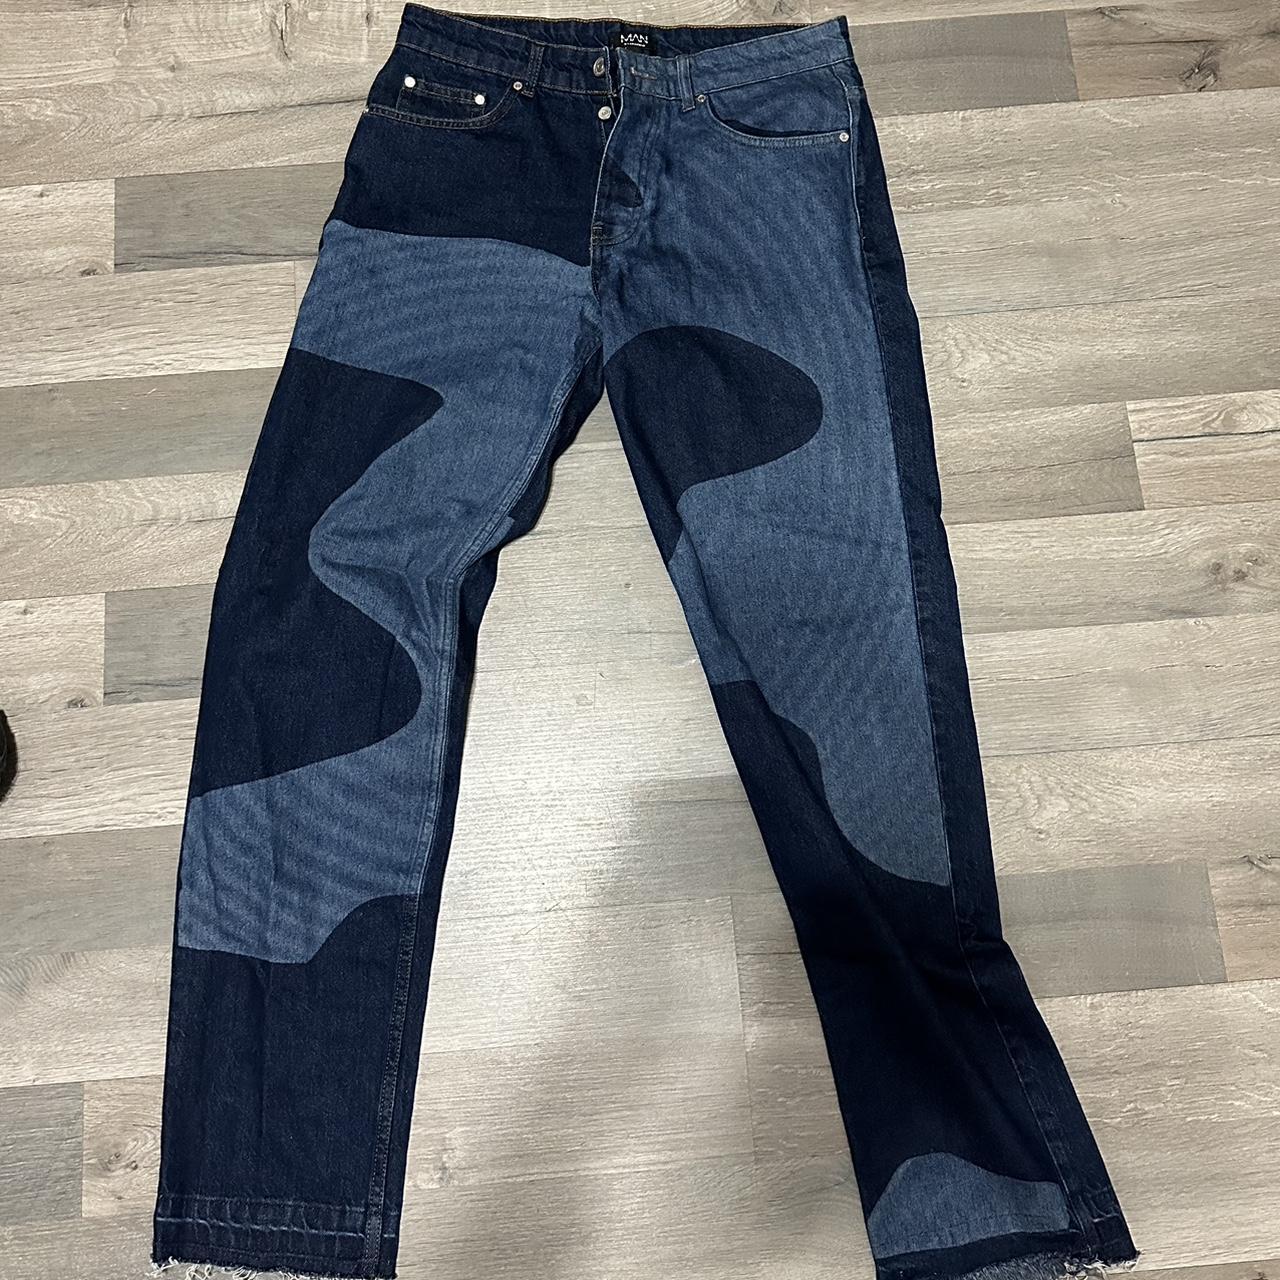 Pants #3 Wavy Pattern Jeans W32 L 31 #Jeans... - Depop